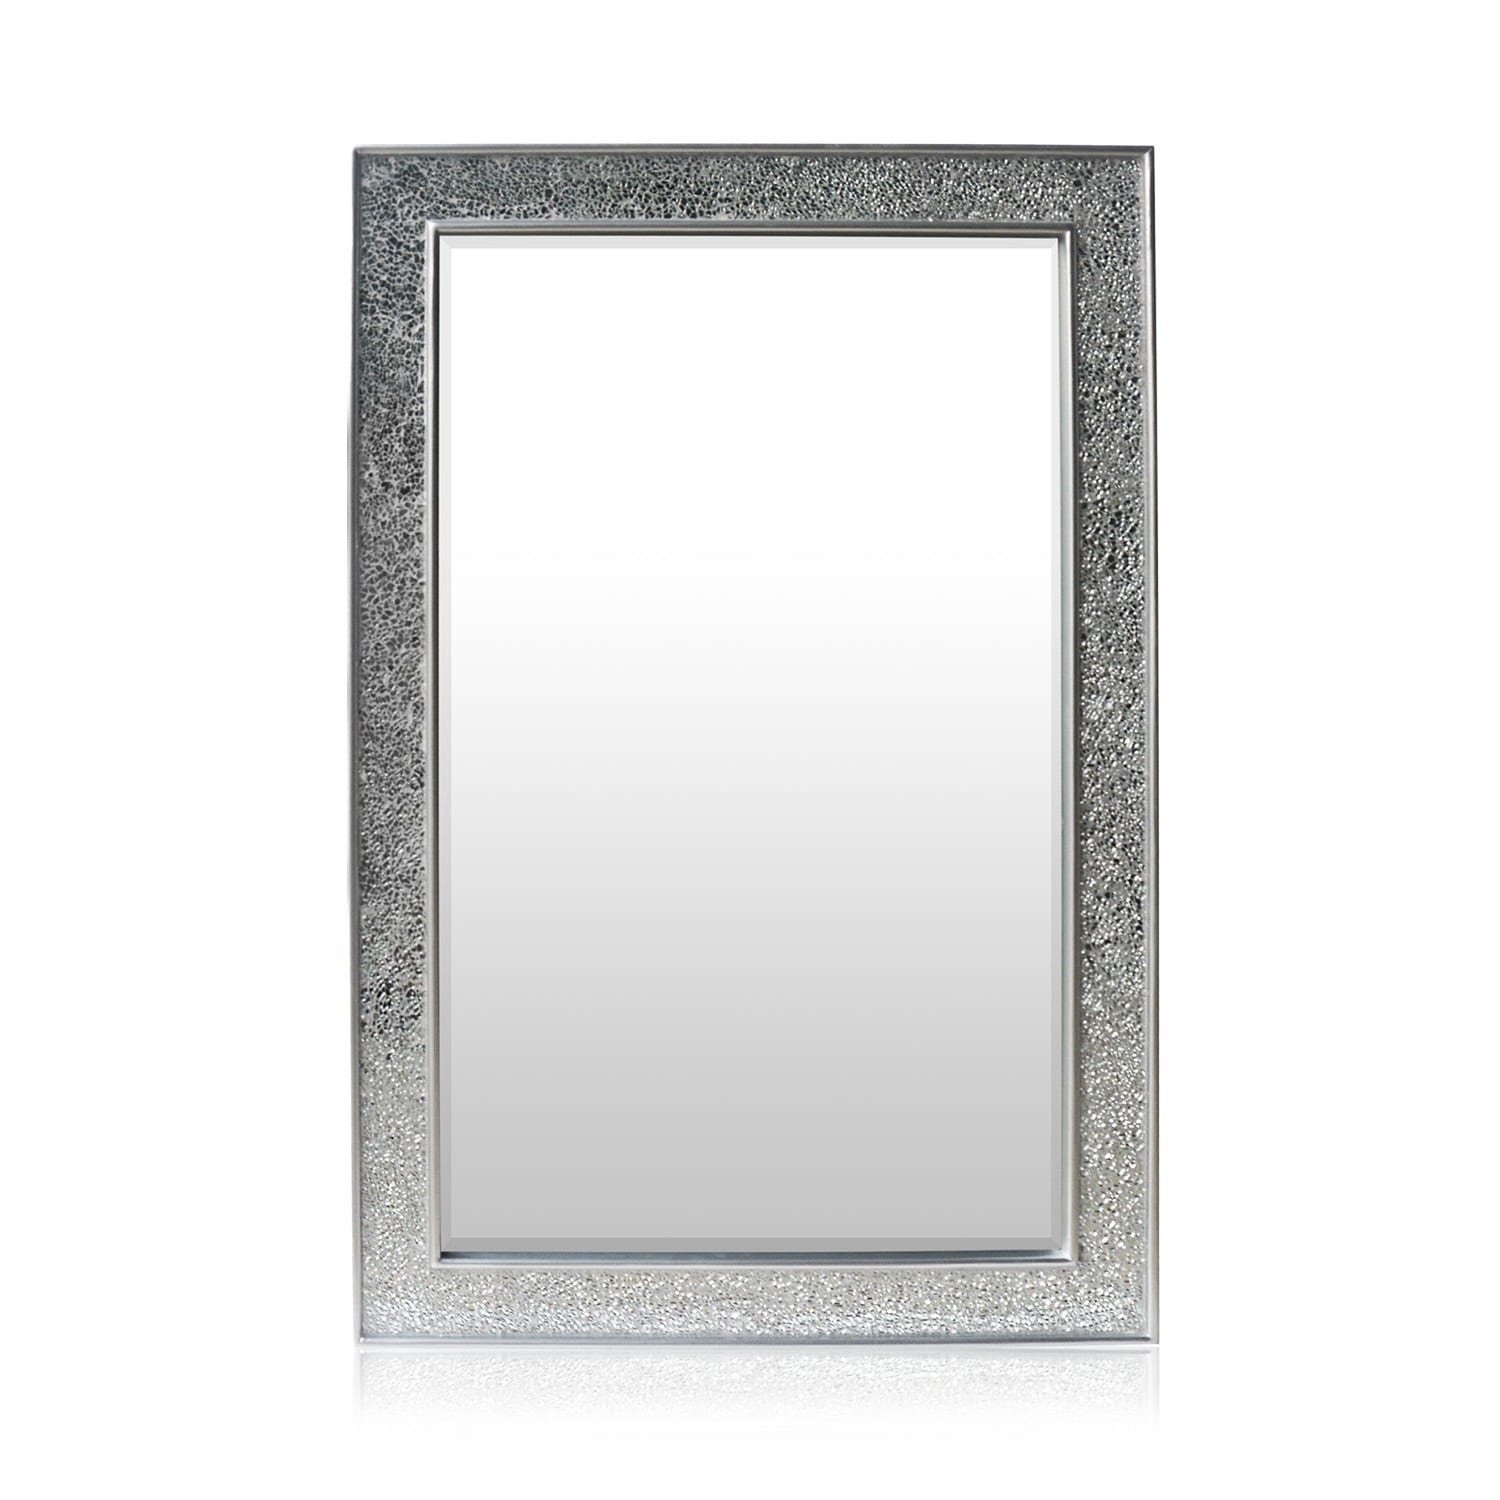 Casa Chic Spiegel Watford Echtholz Mosaikeffekt cm x mit Glasfliesen Silber | 90 60 Silber Wandspiegel